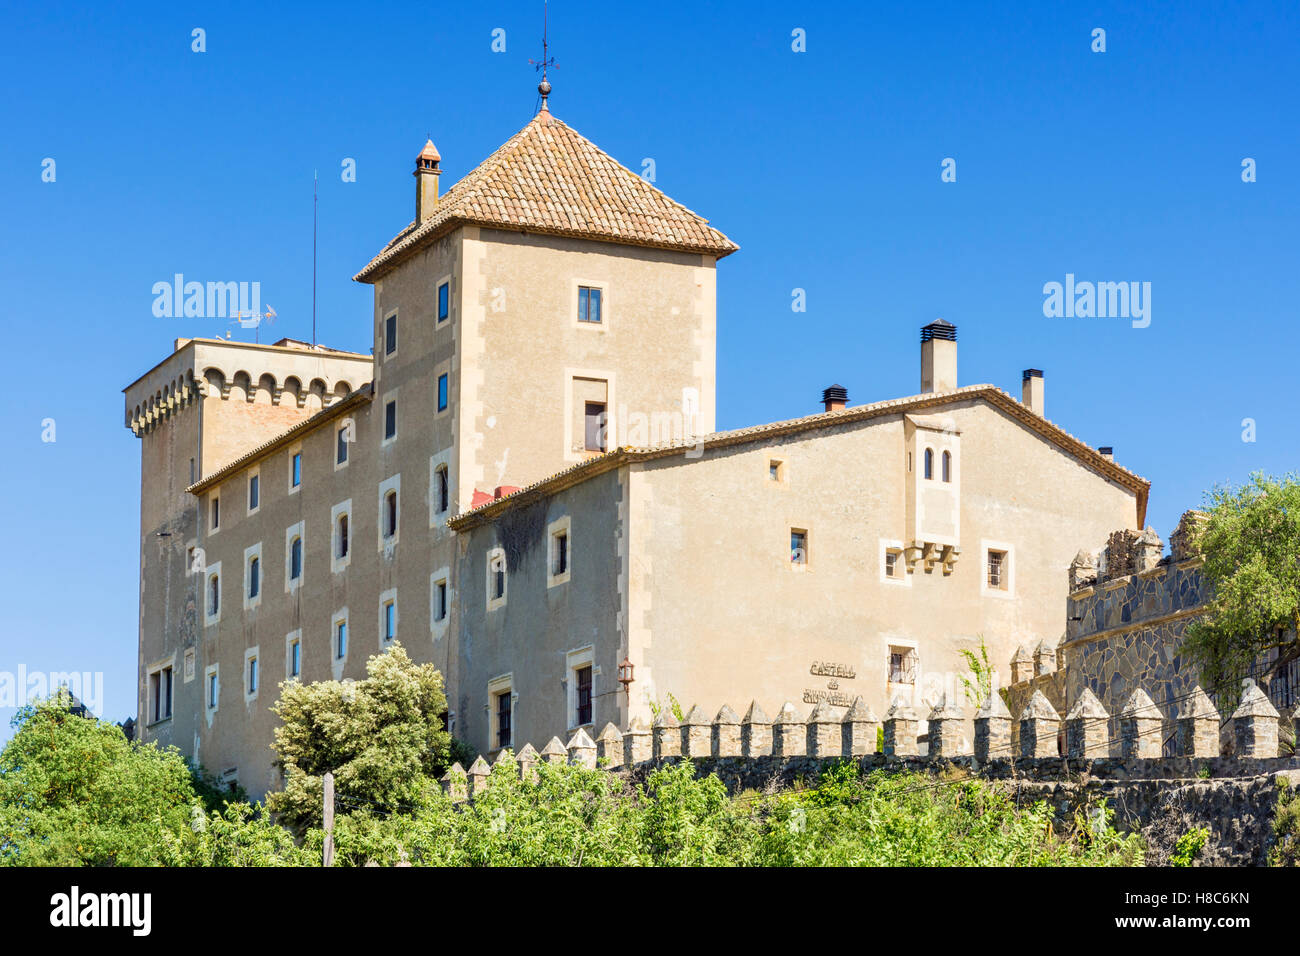 Le manoir fortifié de Castell, Riudabella Vimbodí, Tarragone, Espagne Banque D'Images